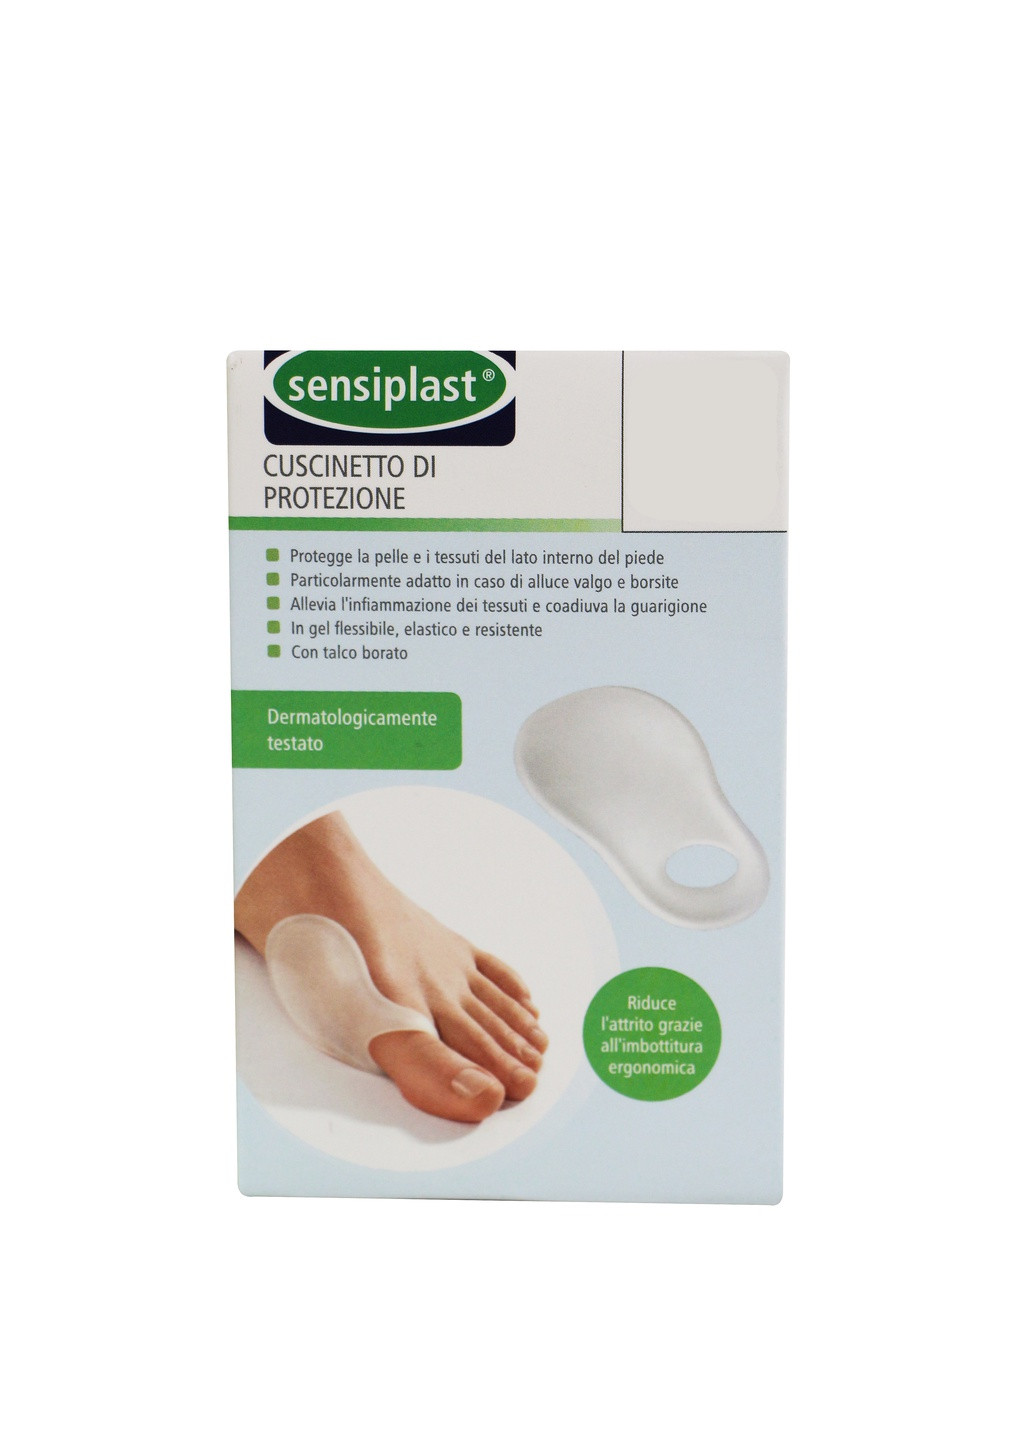 Захист для кісточки пальця ноги Sensiplast (237644030)